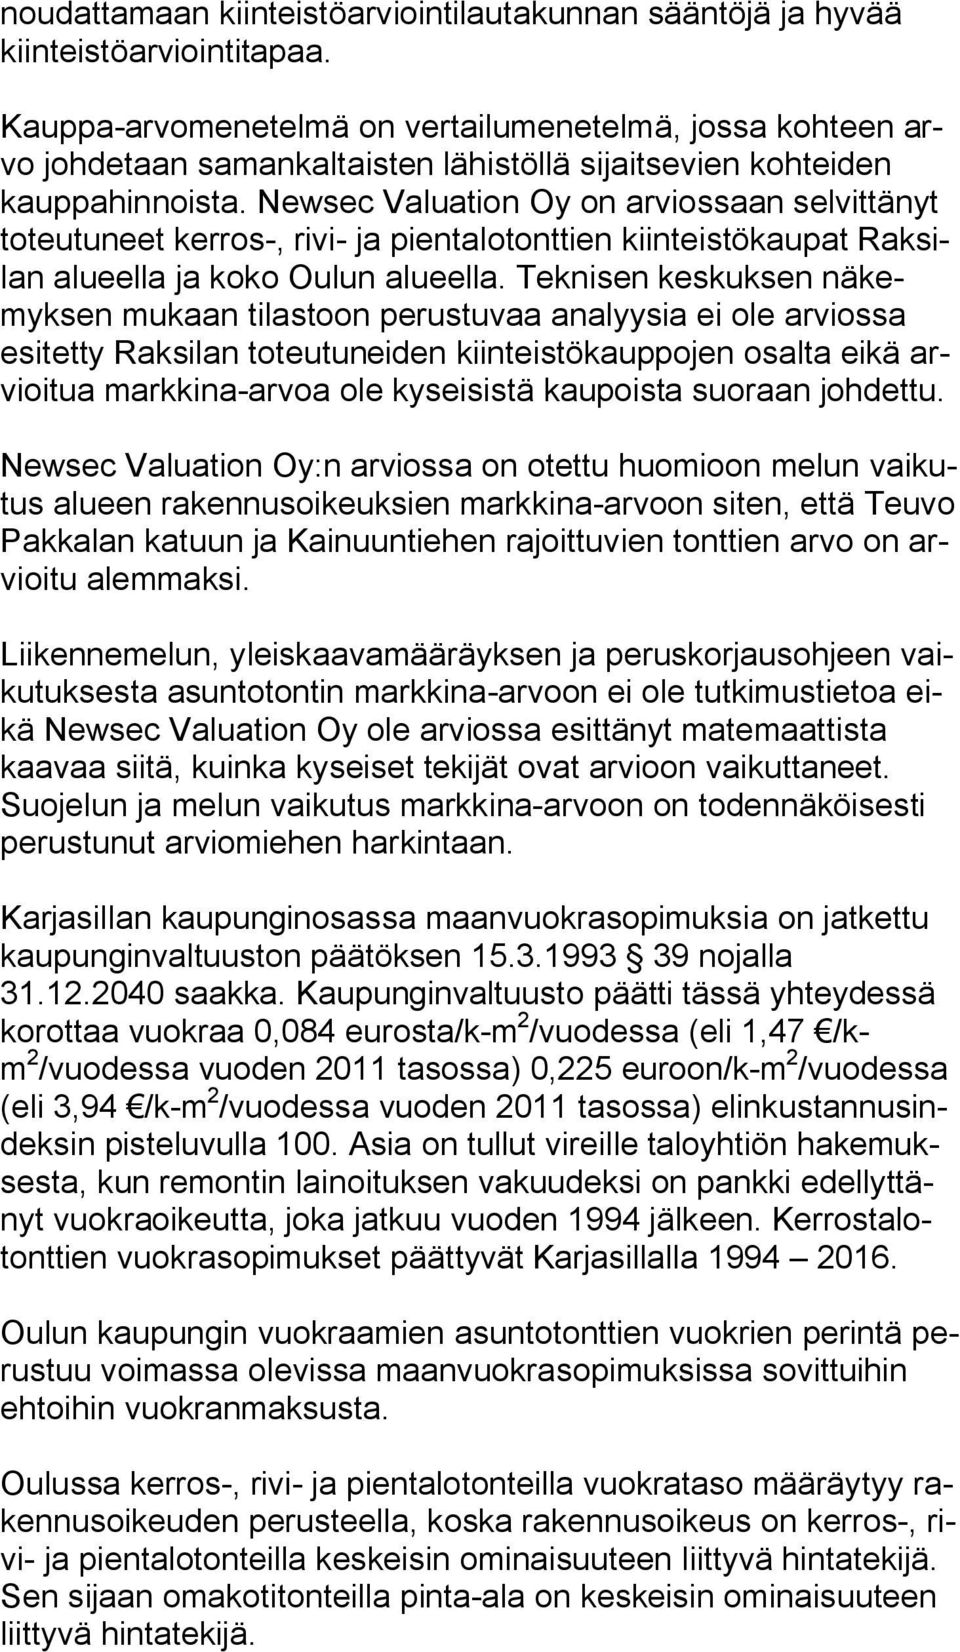 Newsec Valuation Oy on arviossaan selvittänyt toteutuneet kerros-, rivi- ja pientalotonttien kiinteistökaupat Raksilan alueella ja koko Oulun alueella.